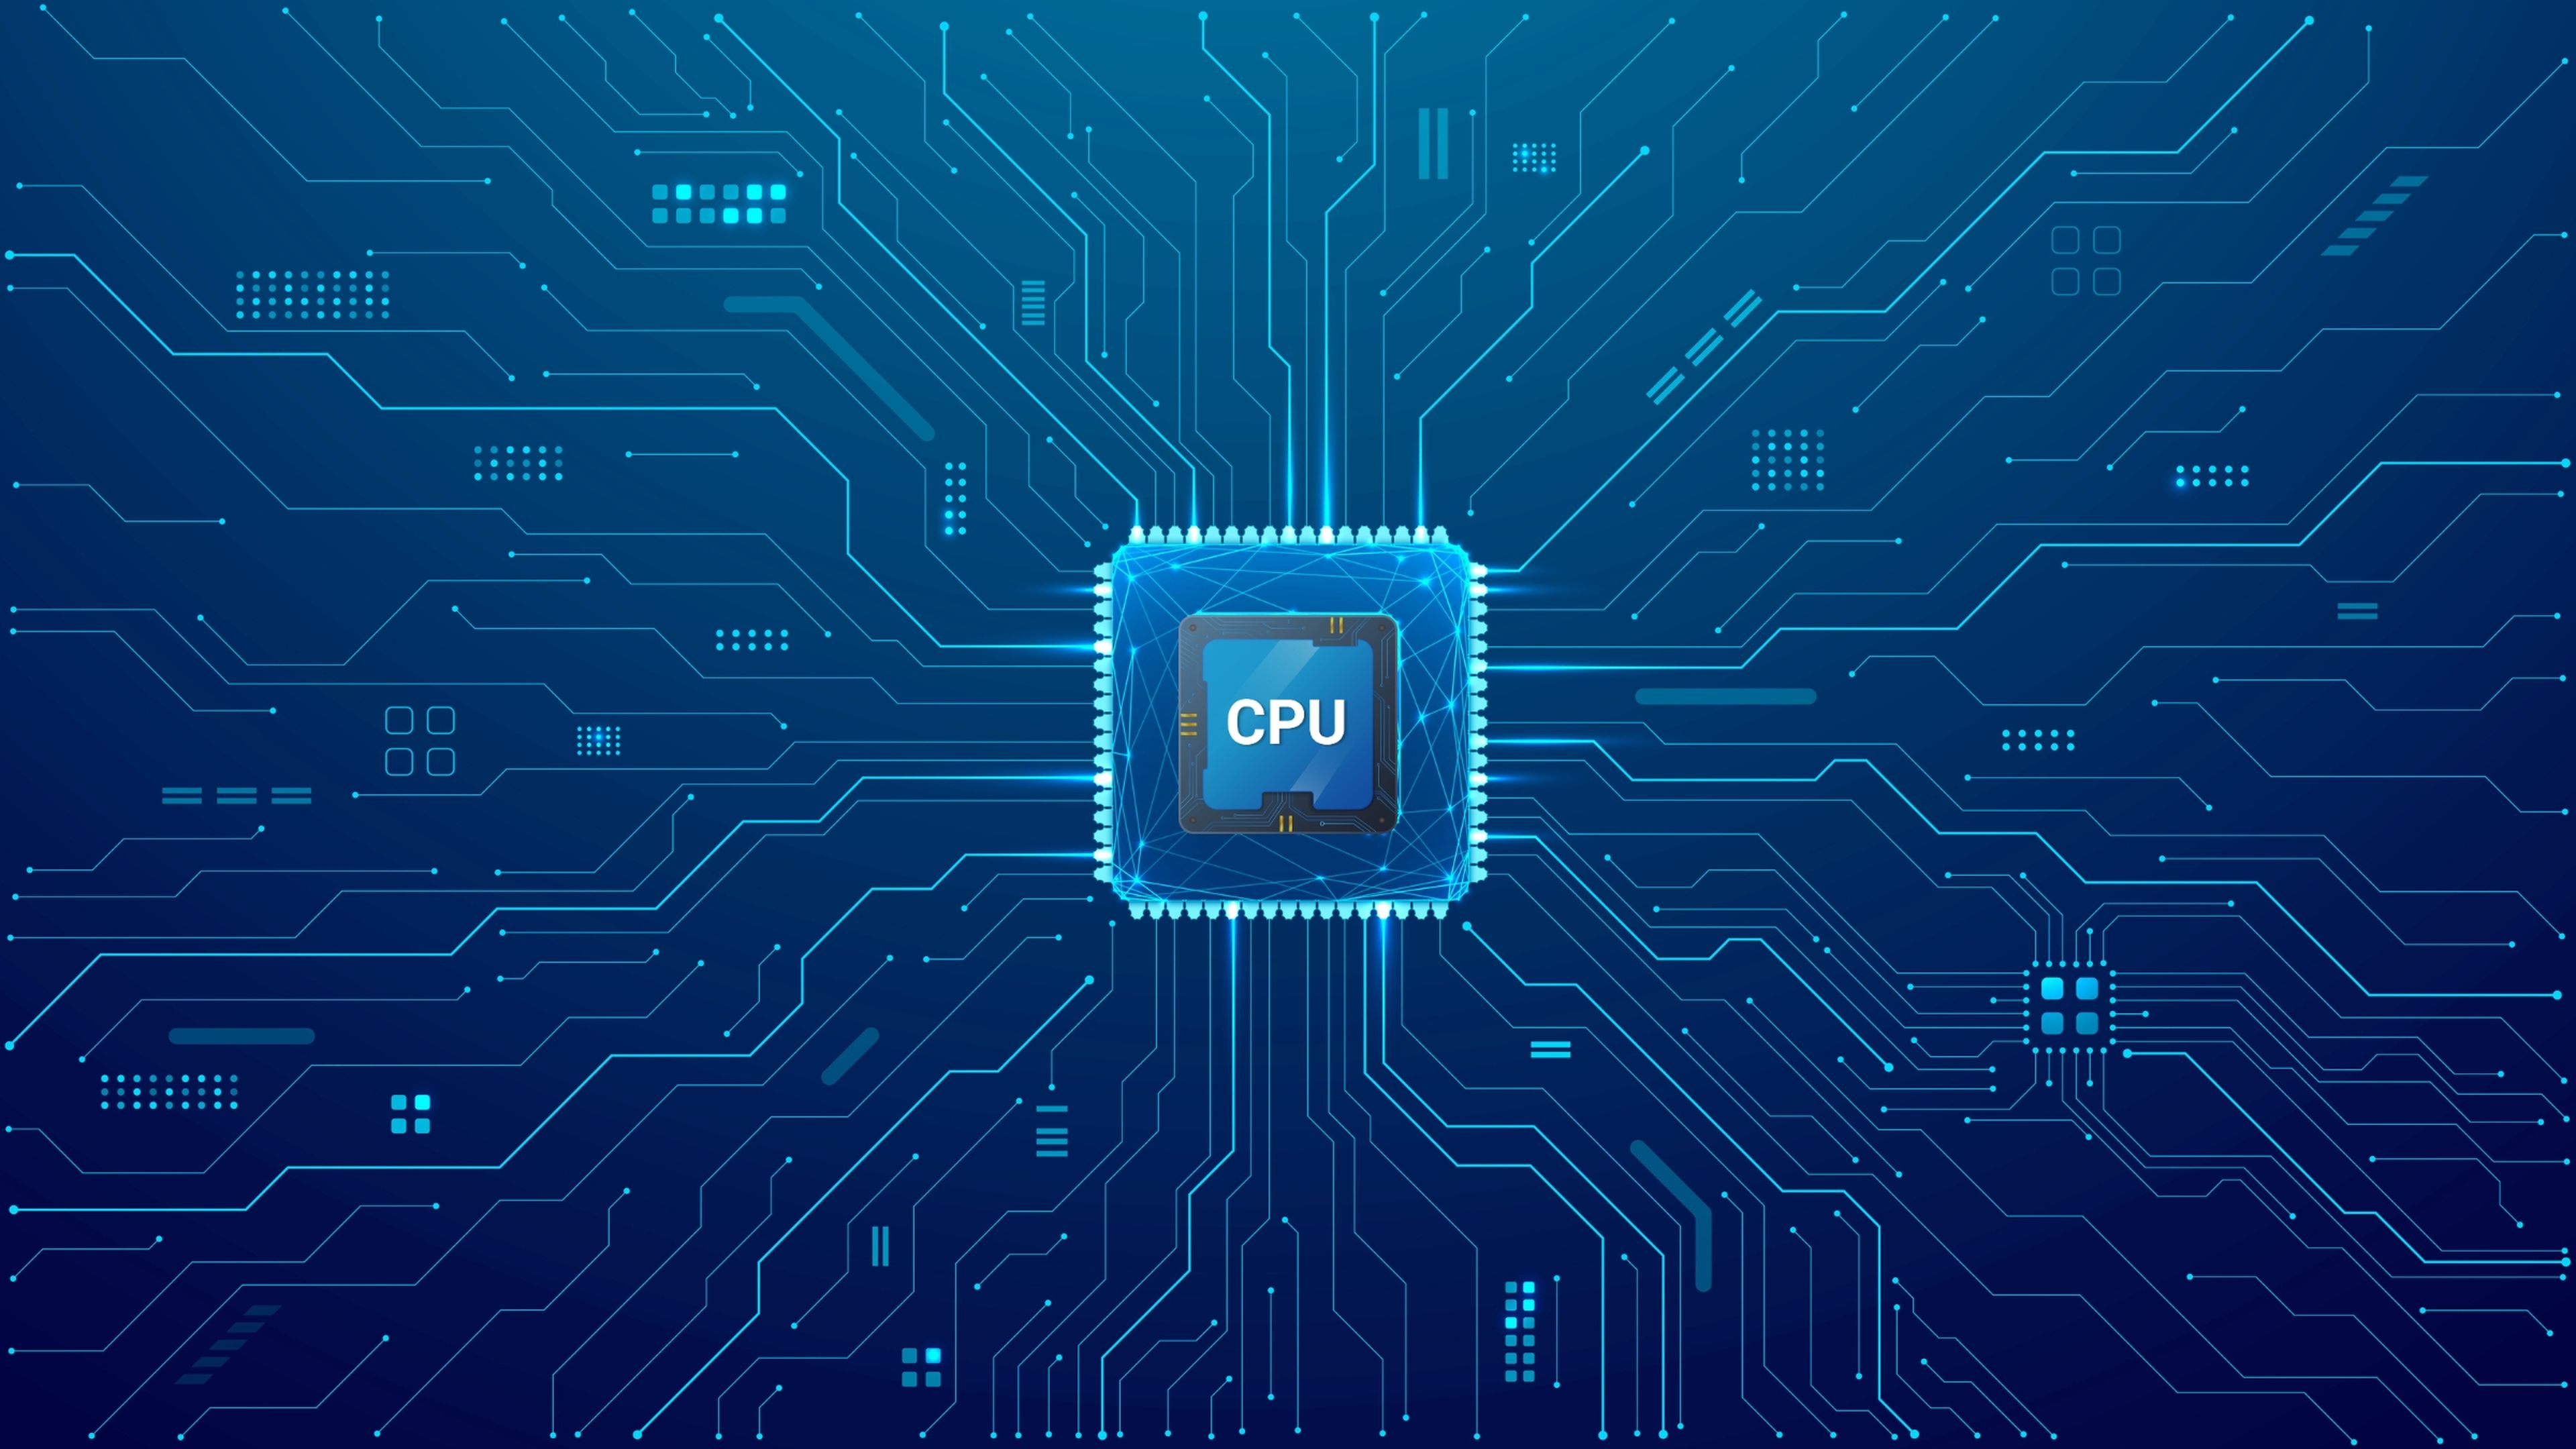 Diferencias entre CPU, GPU, iGPU y APU